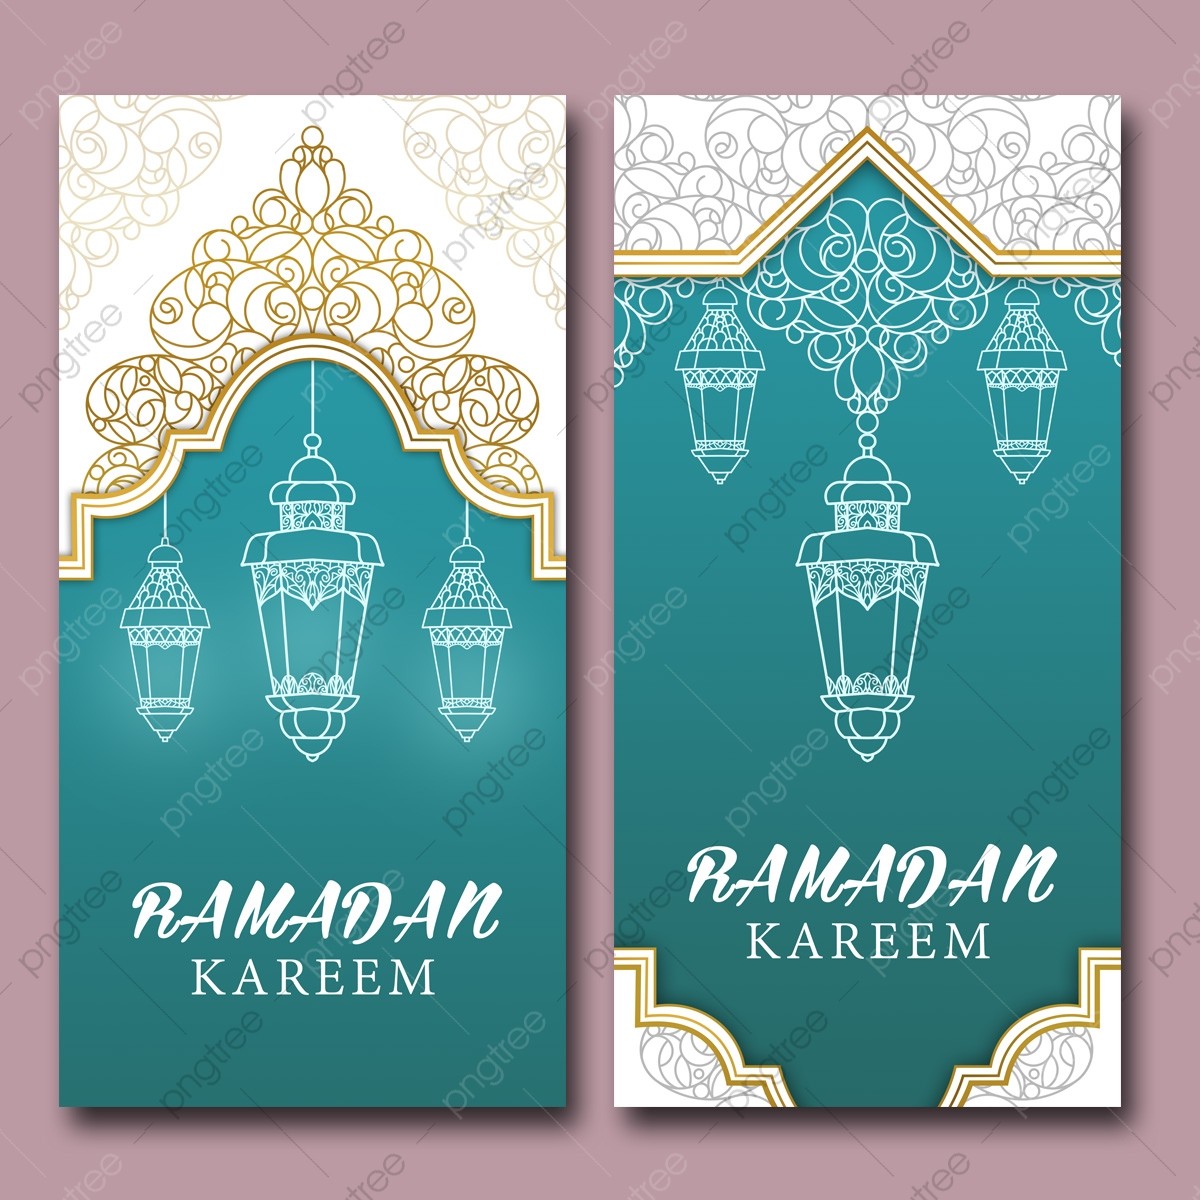 pngtree-banner-ramadan-kareem-decorative-lantern-islamic-border-png-image_5357667.jpg